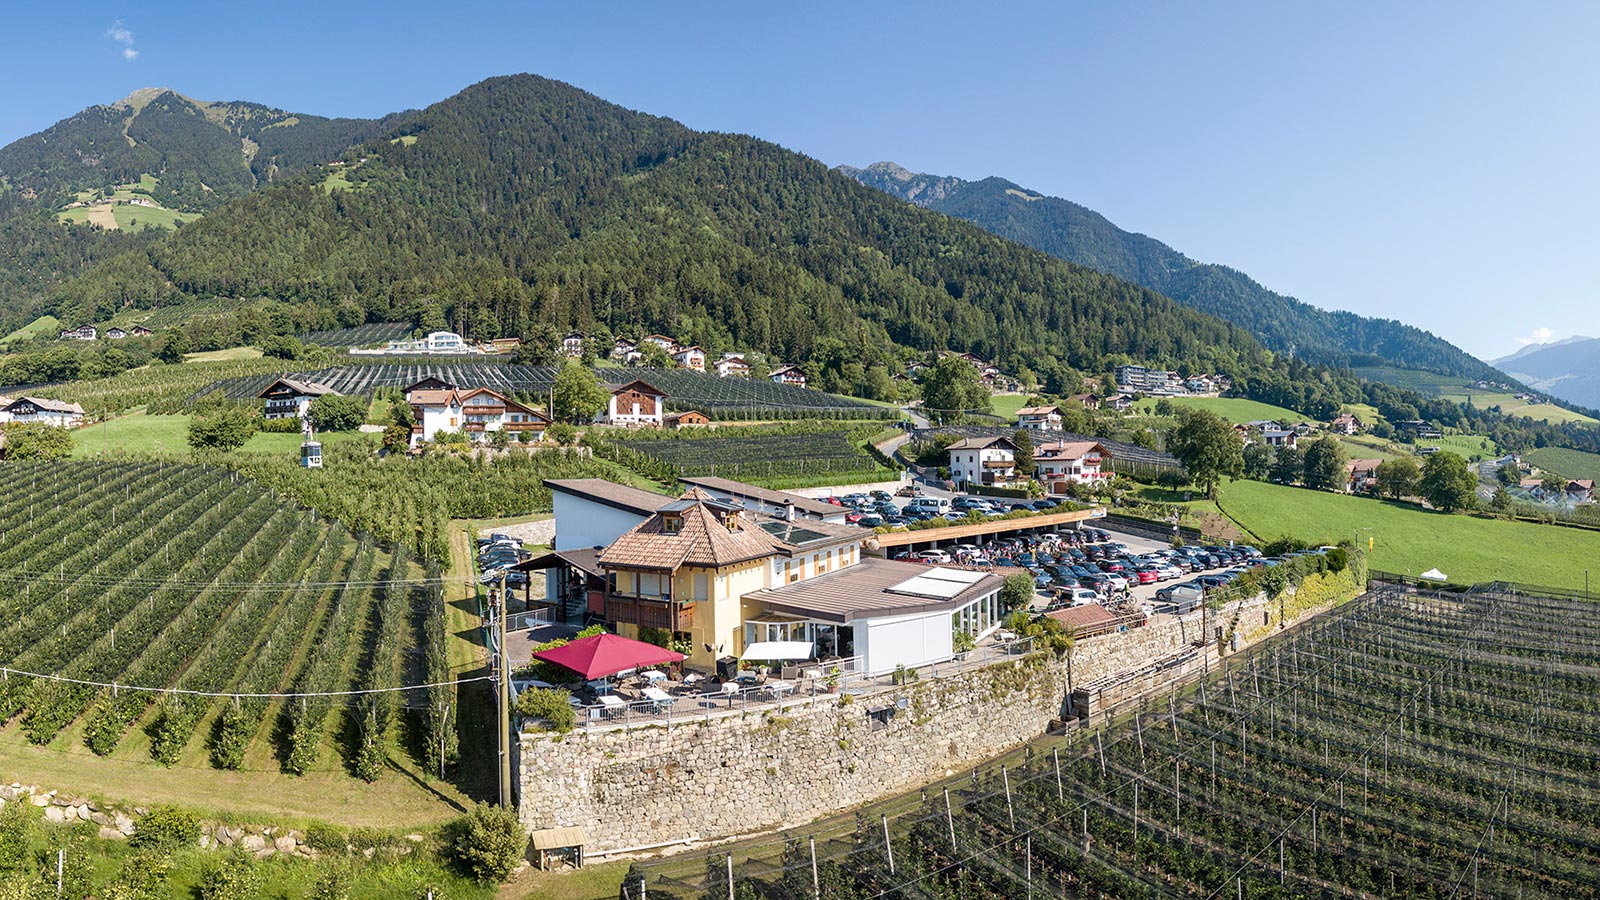 Restaurant Seilbahn Dorf Tirol von oben gesehen, im Hintergrund Weinreben